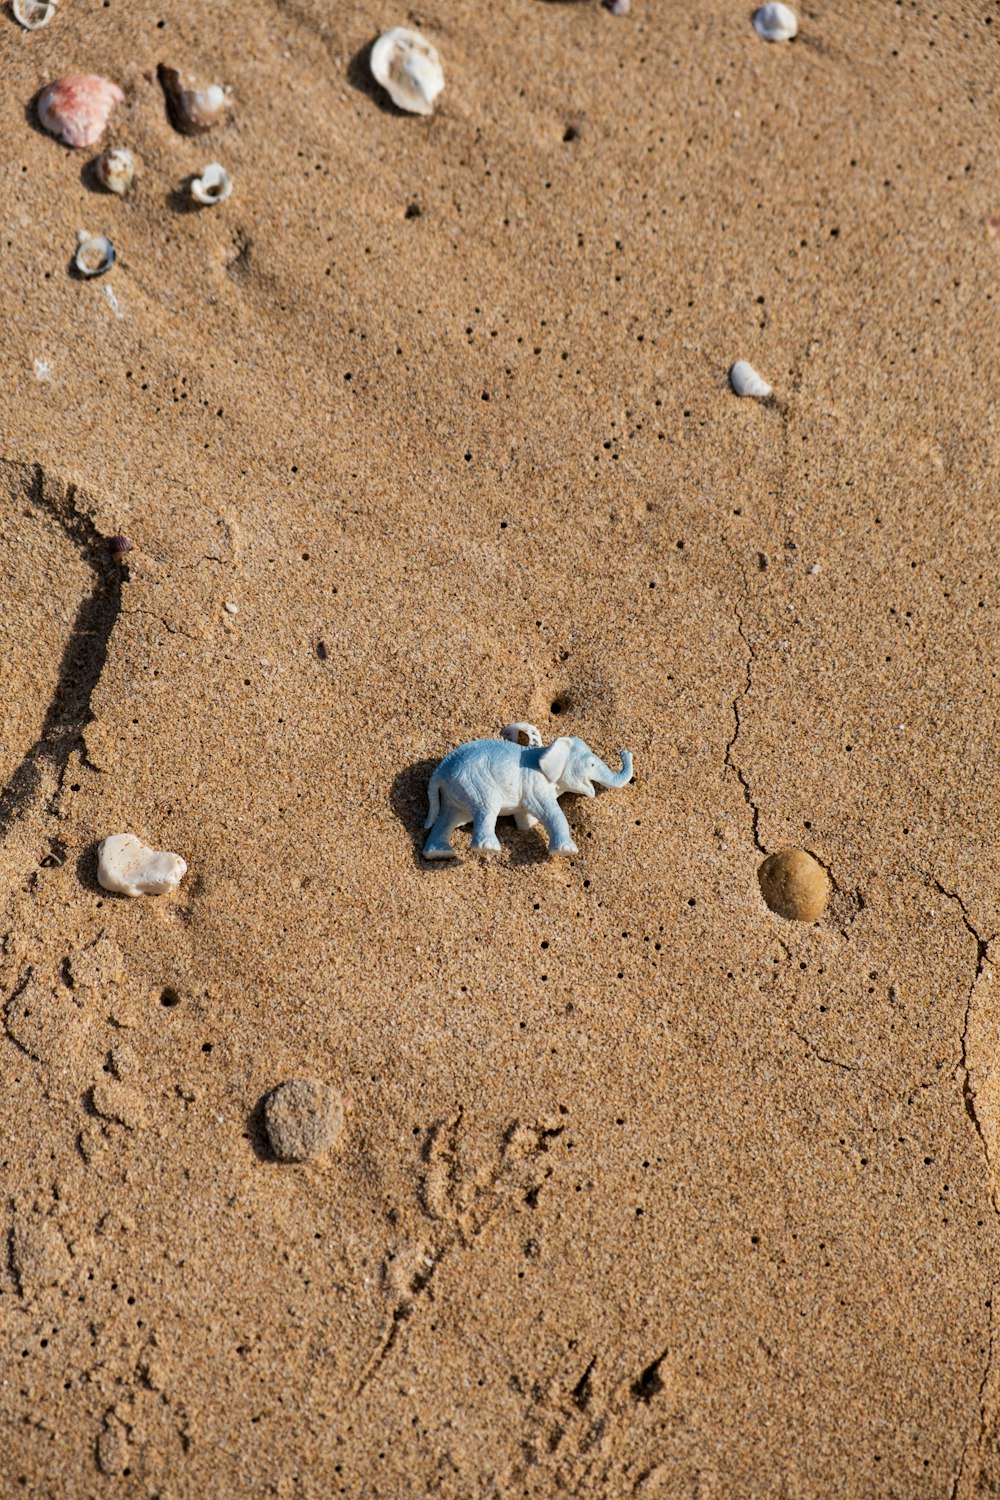 a small toy elephant on a sandy beach